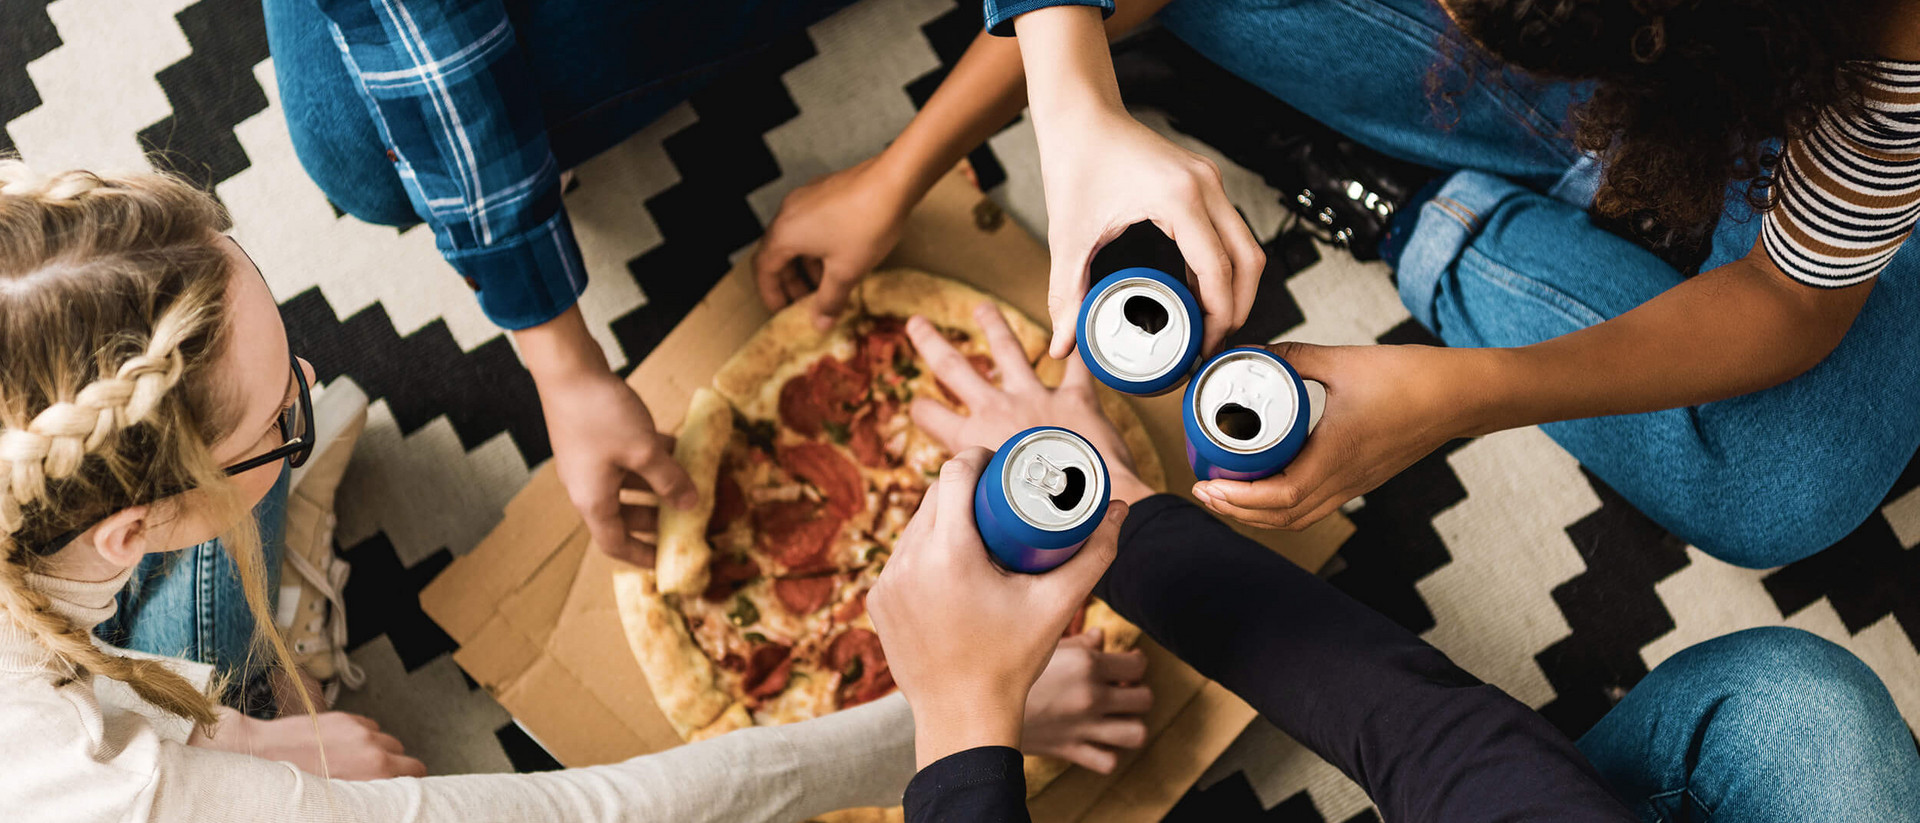 Vier junge Menschen sitzen im Schneidersitz auf dem Boden. In der Mitte von ihnen liegt eine Pizza auf einem Pappkarton. Alle vier nehmen sich ein Stück Pizza, drei von ihnen halten dabei eine blaue Dose in der anderen Hand und stoßen damit an. 